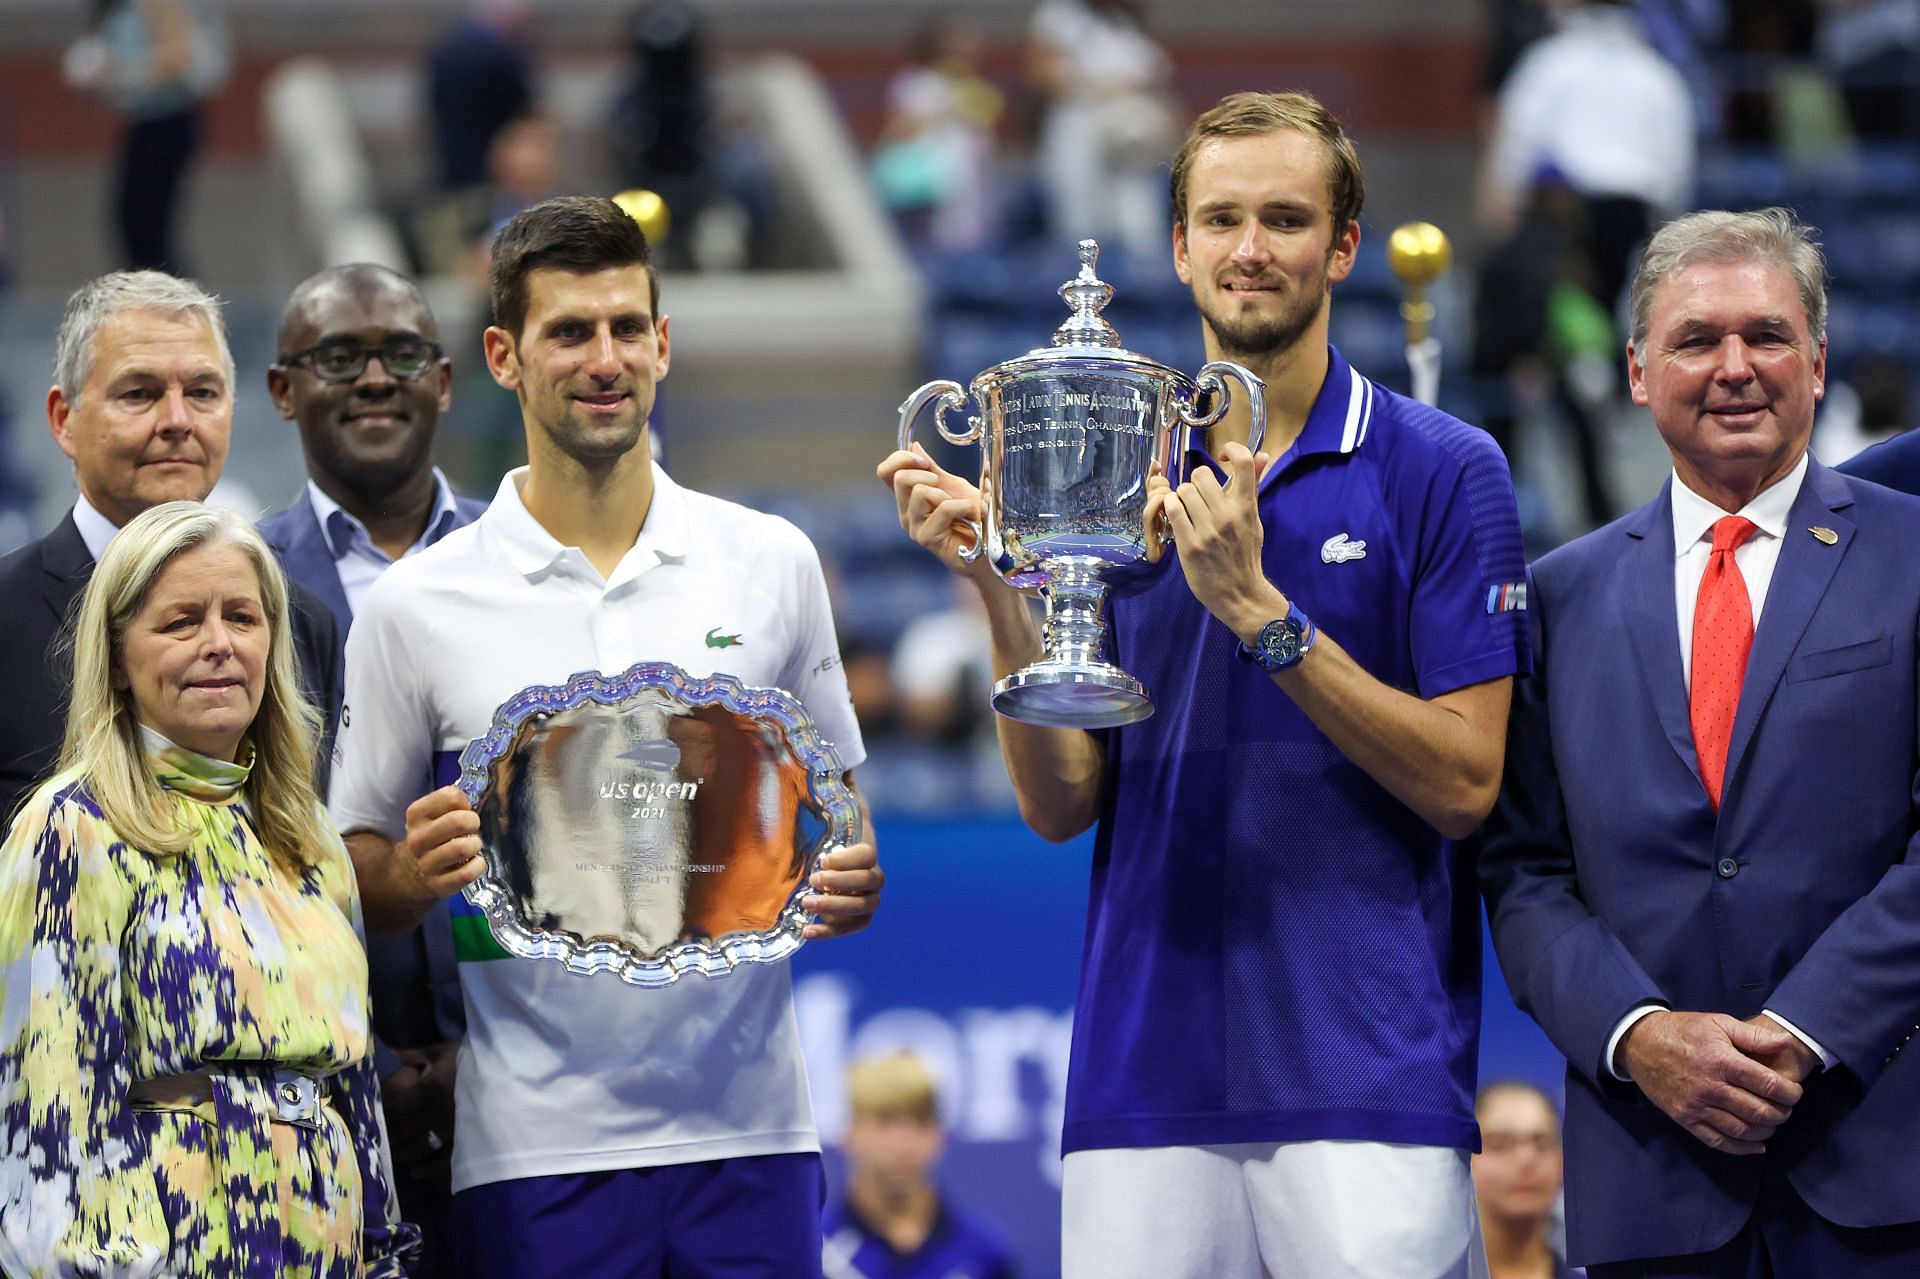 Novak Djokovic lost the 2021 US Open final to Daniil Medvedev